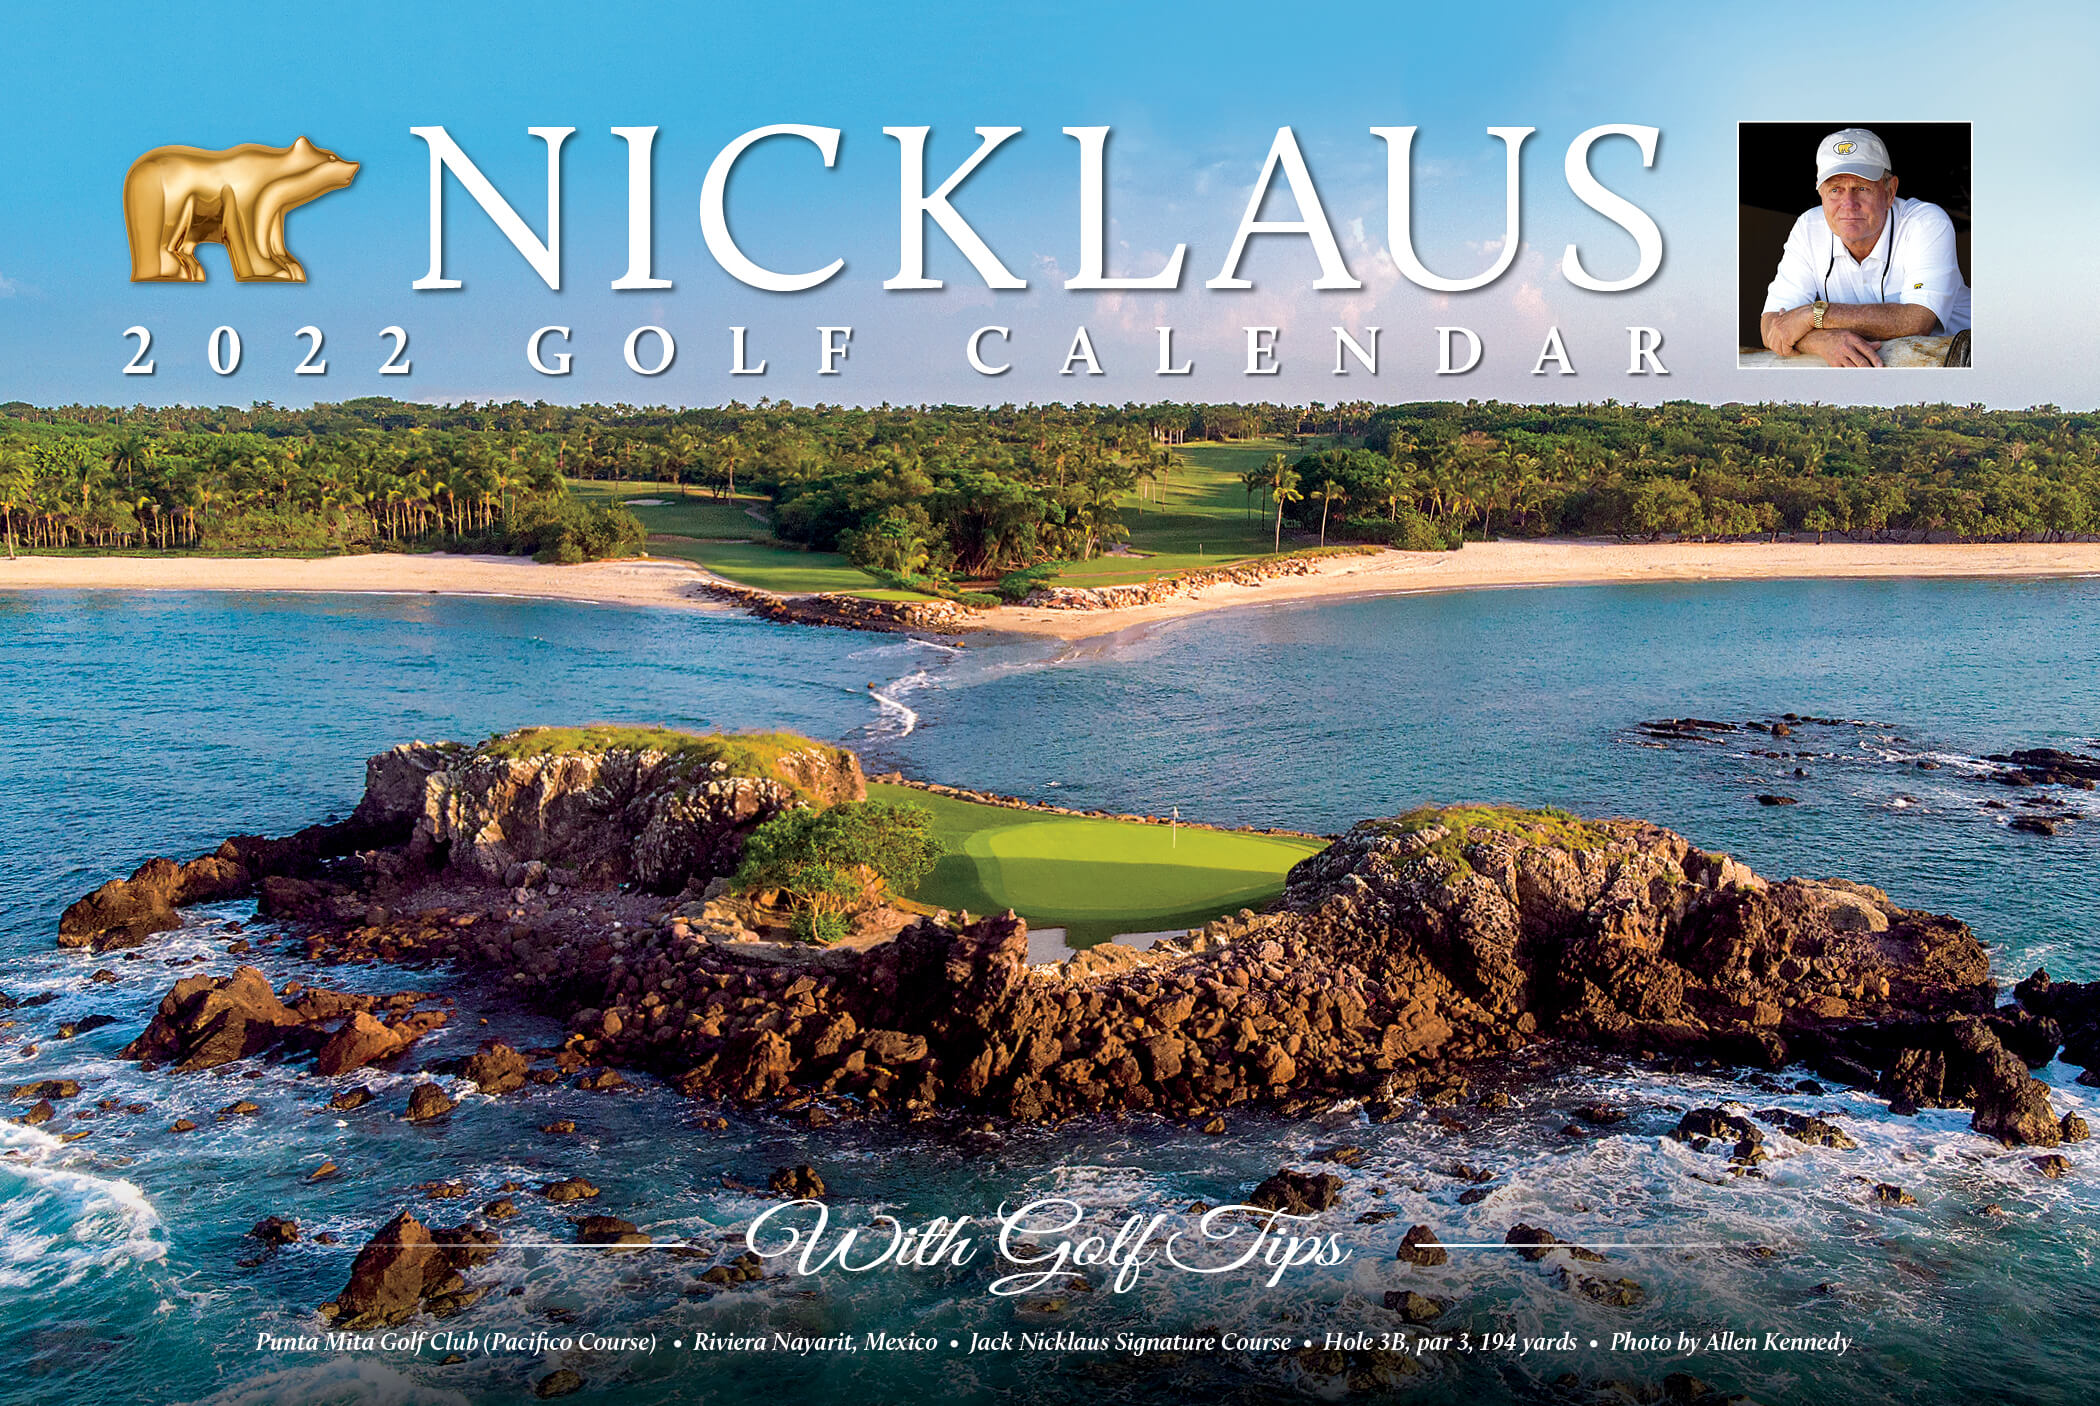 Nicklaus Golf Calendar Cover